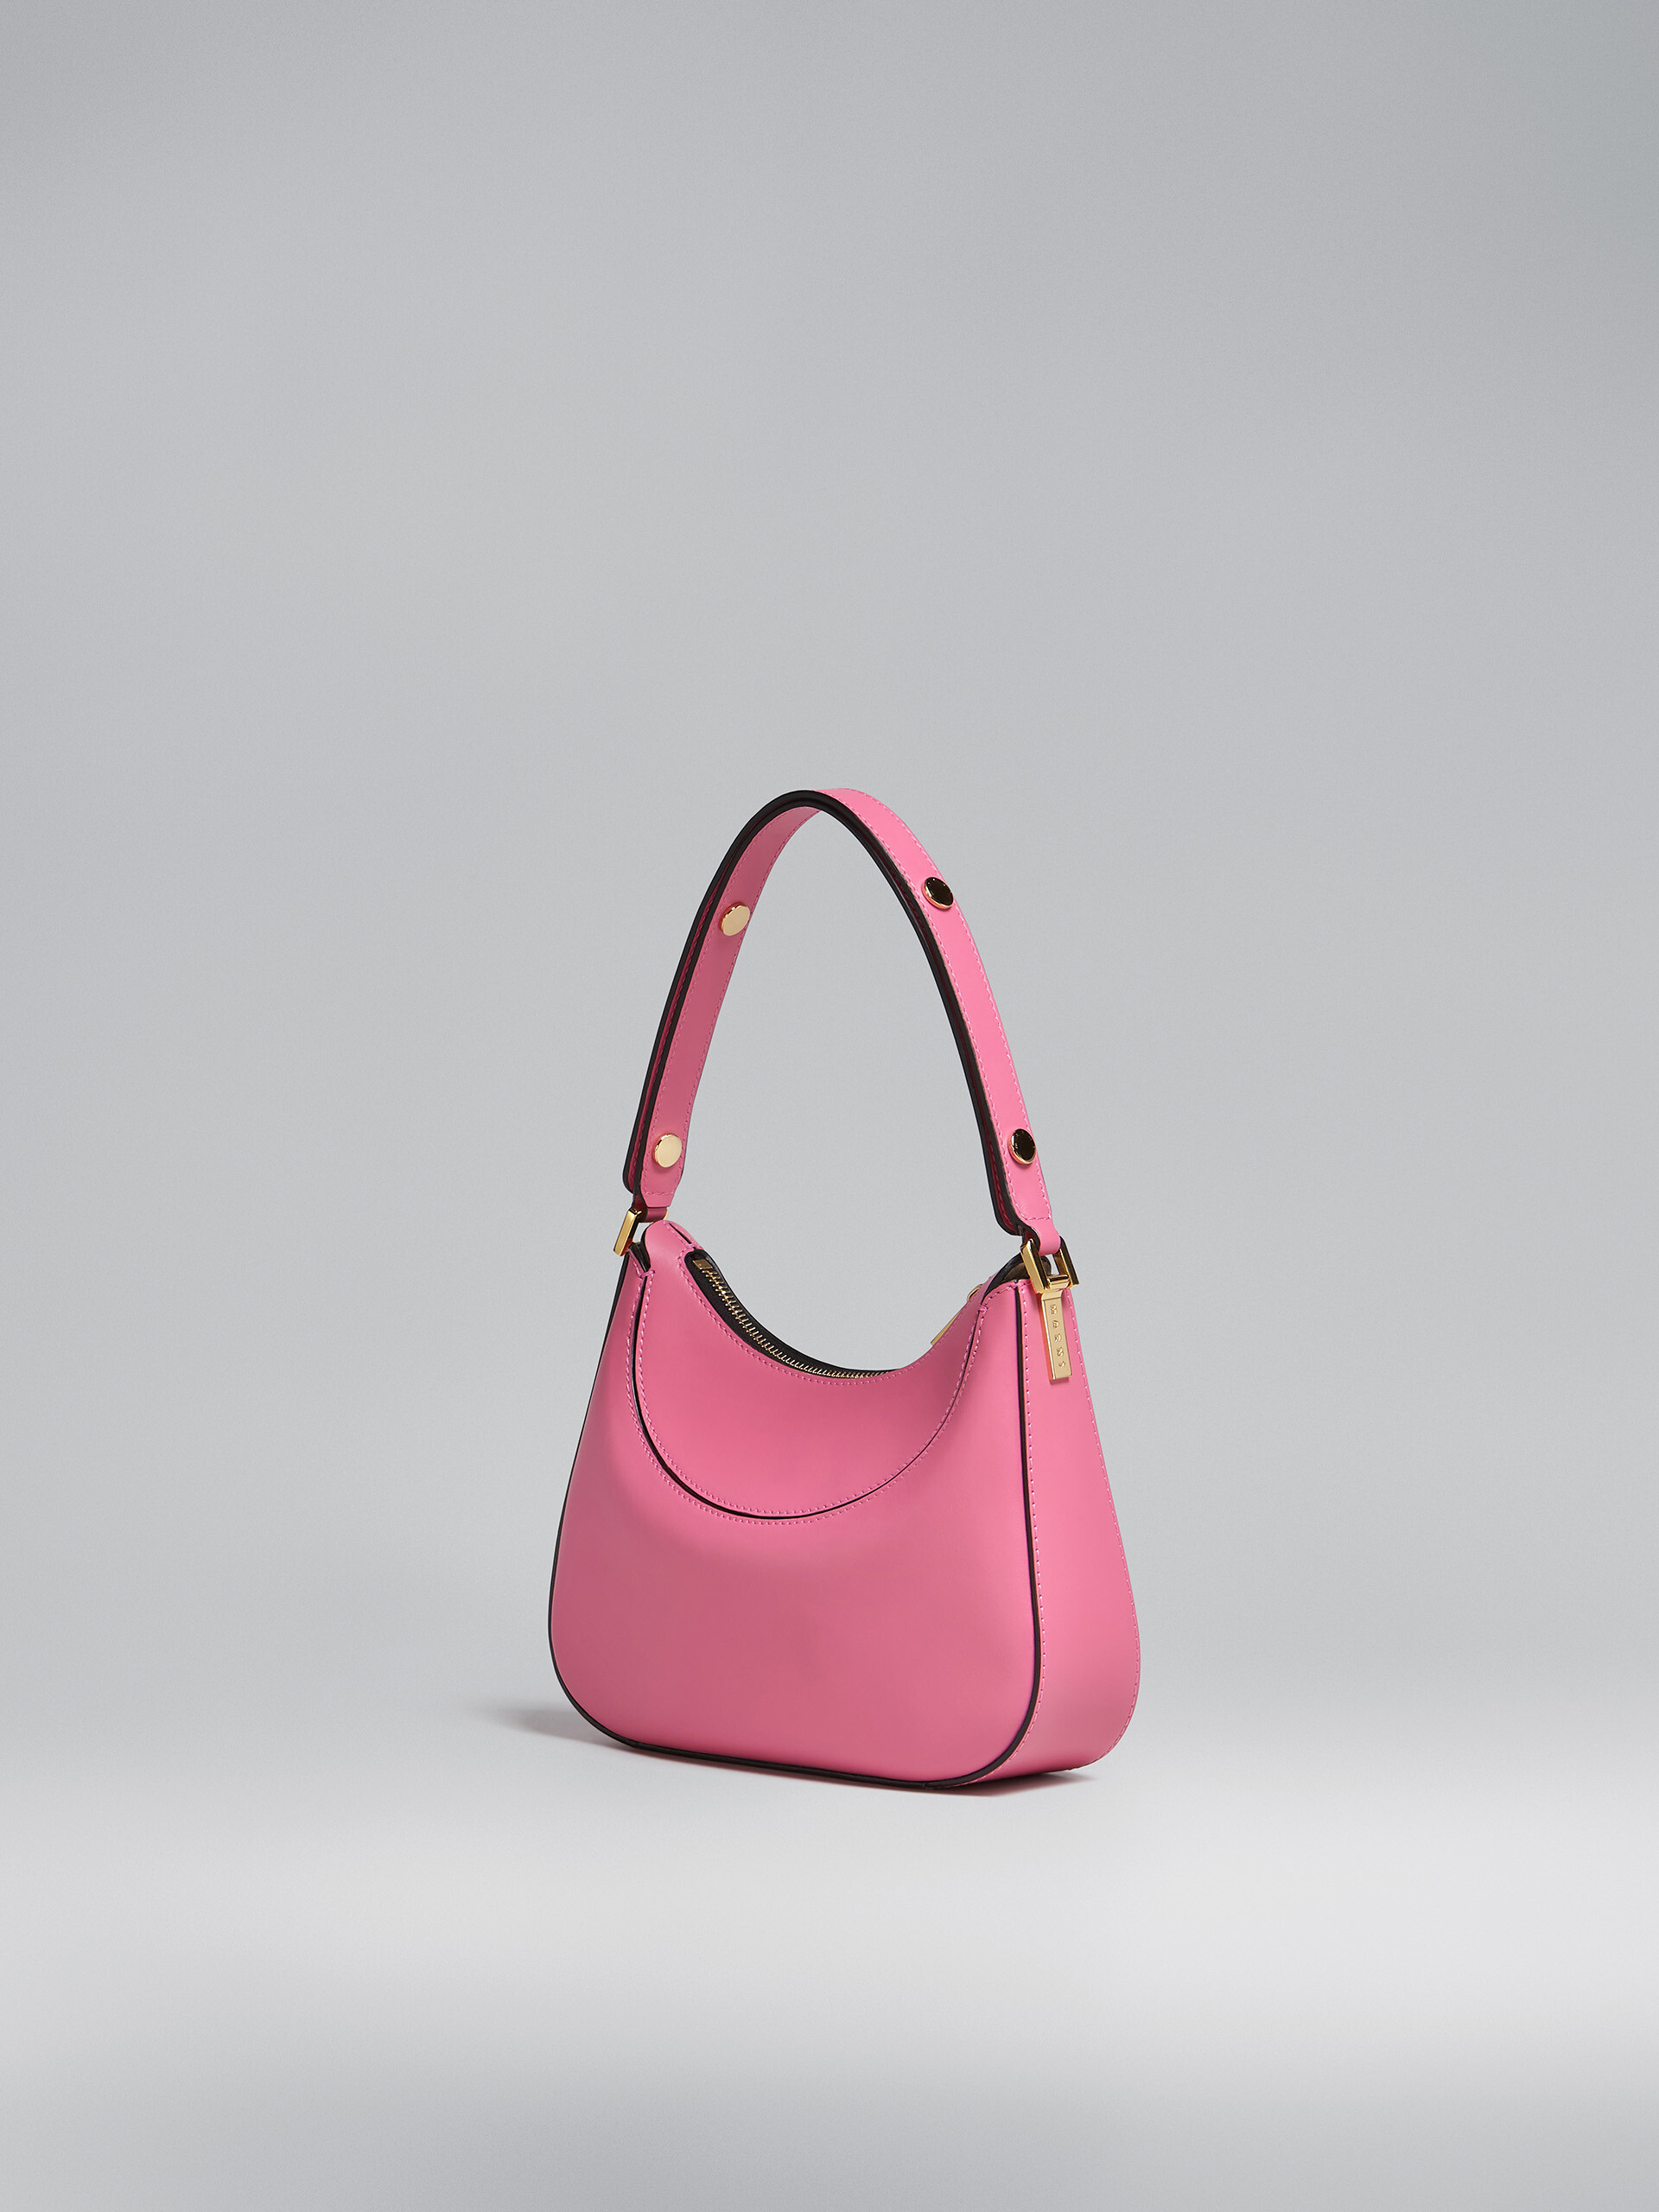 Milano bag mini in pelle rosa - Borse a mano - Image 3